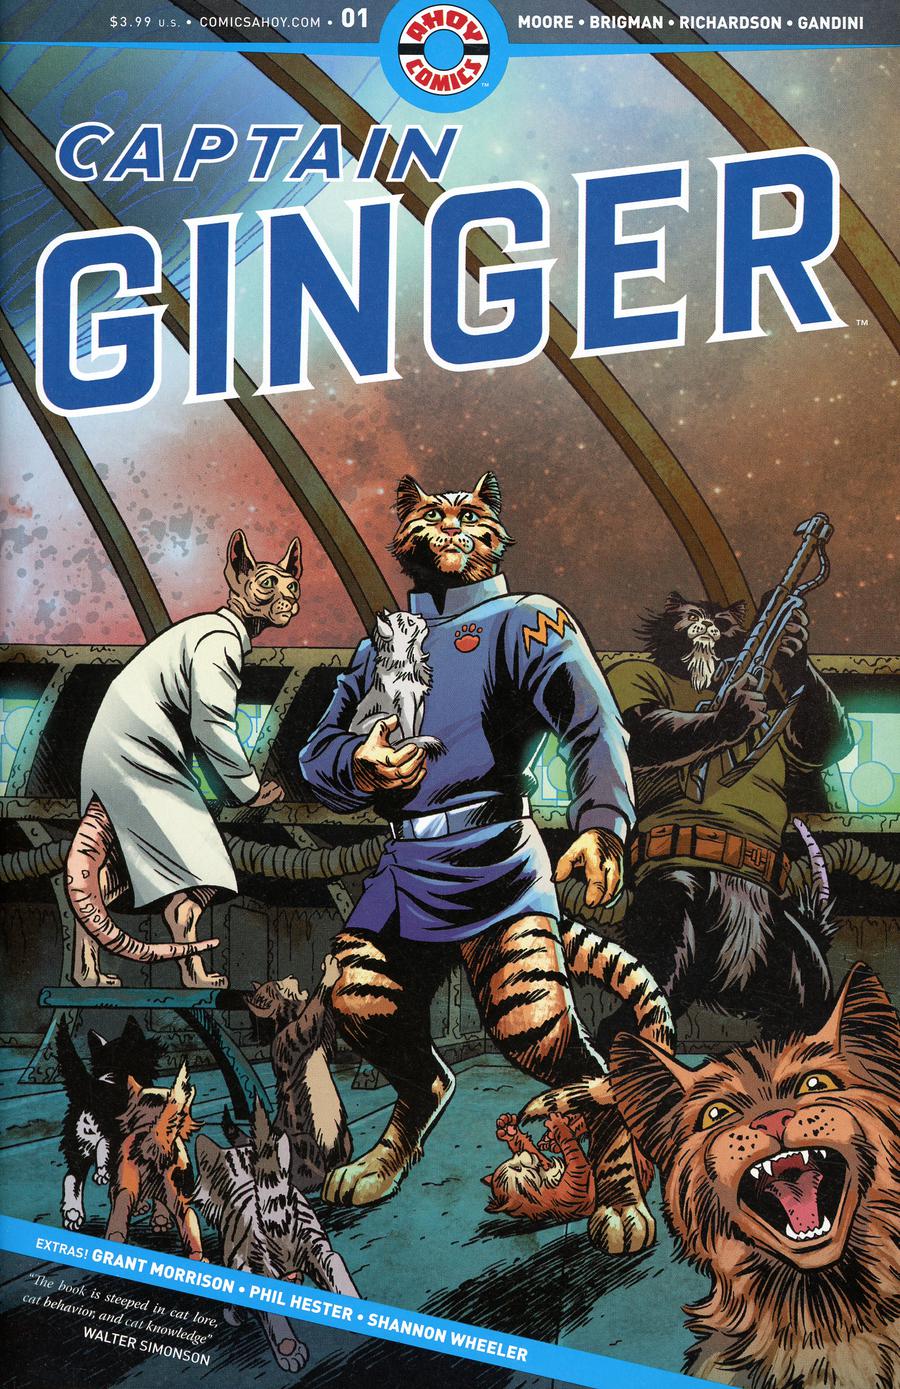 Captain Ginger #1